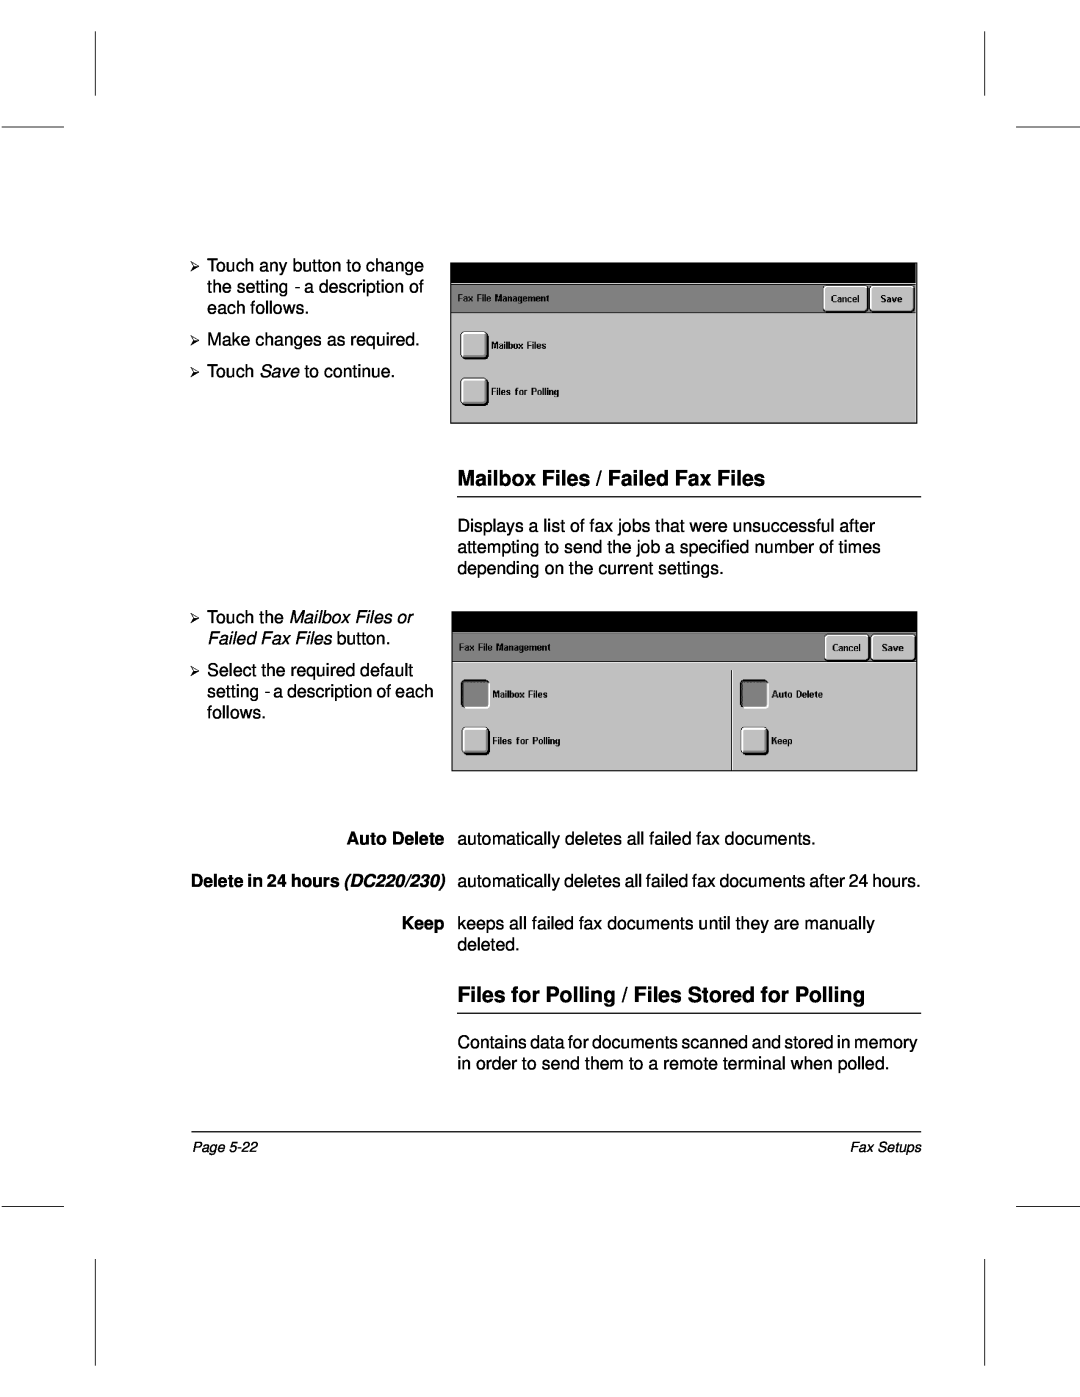 Xerox 340, 332, 220, 230 setup guide Mailbox Files / Failed Fax Files, Files for Polling / Files Stored for Polling 